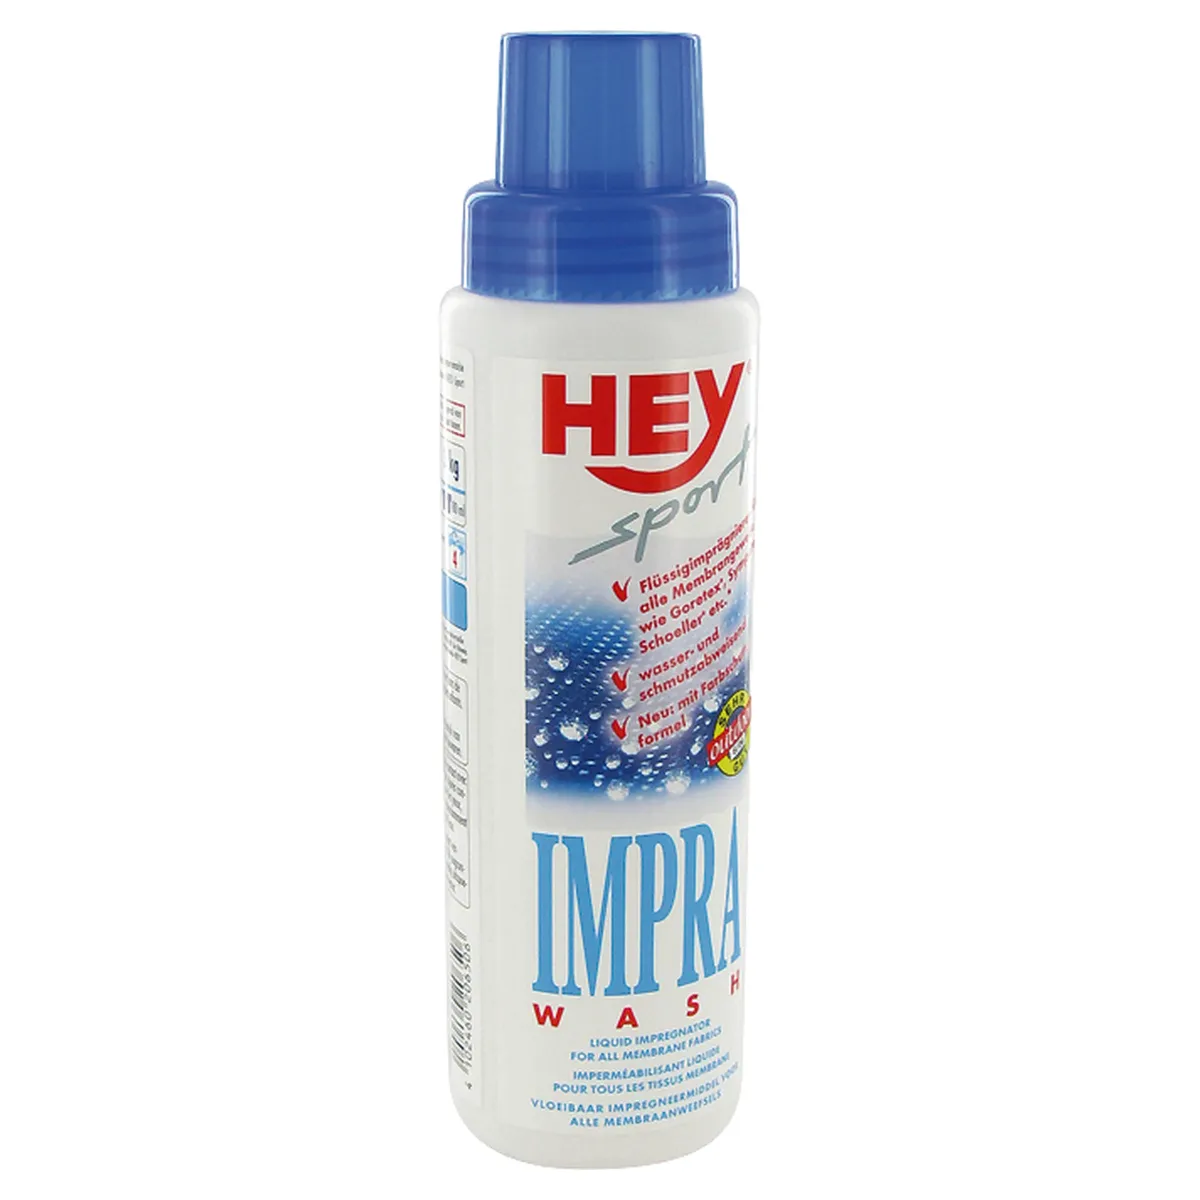 Hey Impra-Wash